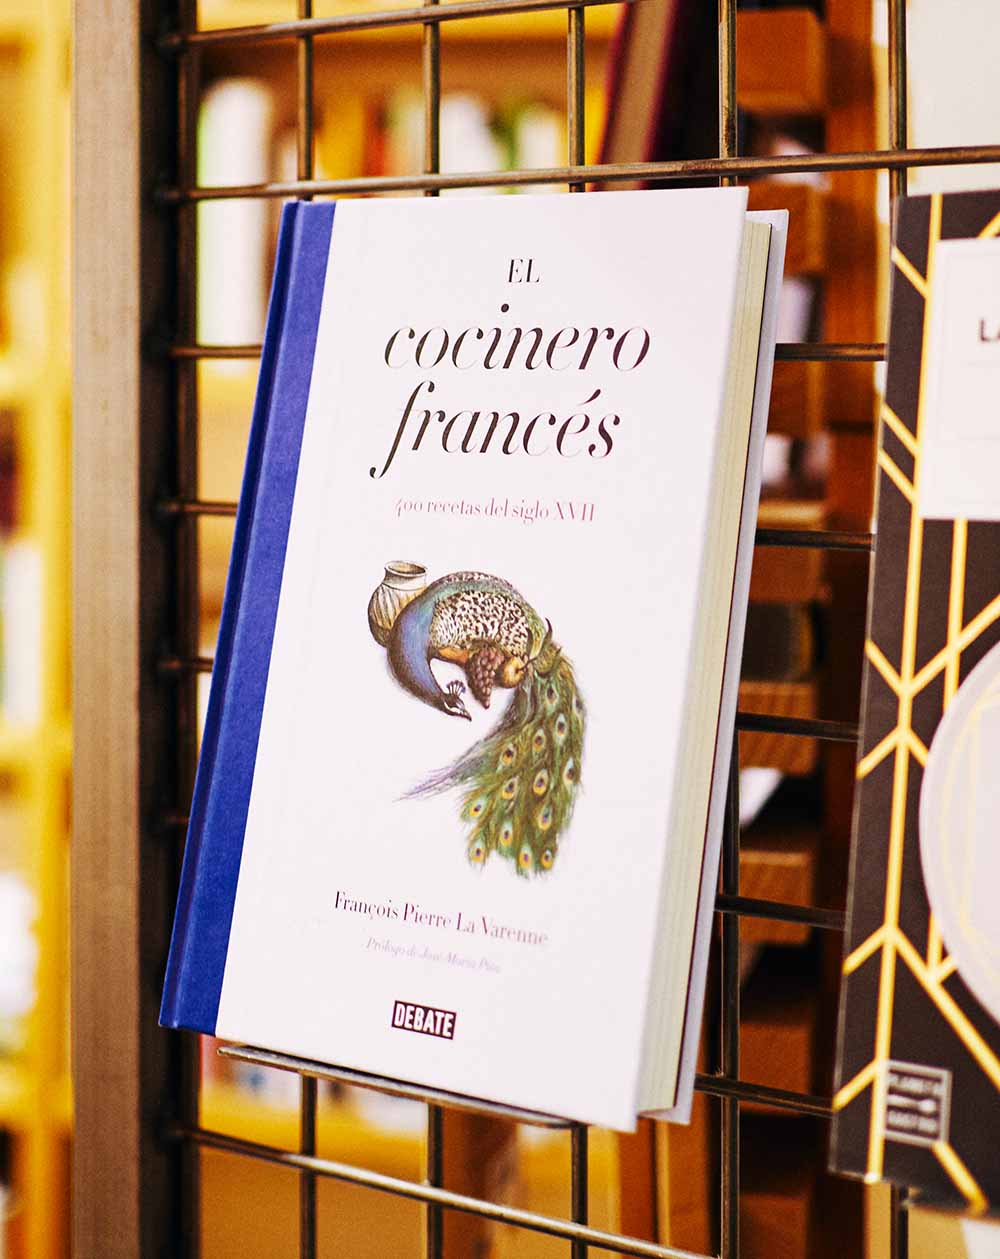 Top 23 de los mejores libros gastronómicos por San Jordi